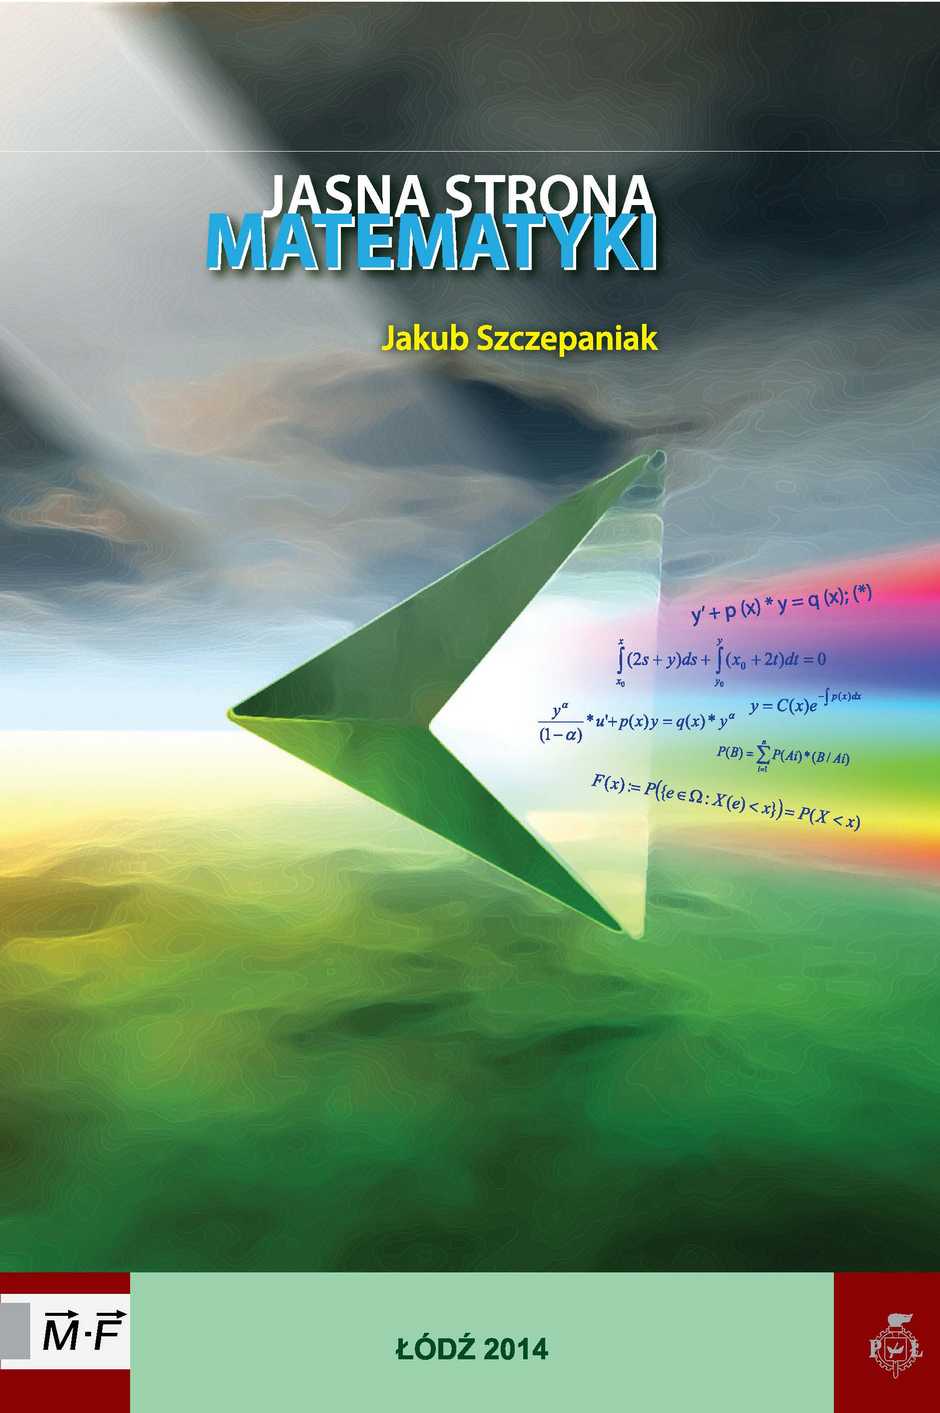 ZESTAW: Trzy książki z matematyki J.Szczepaniaka w komplecie